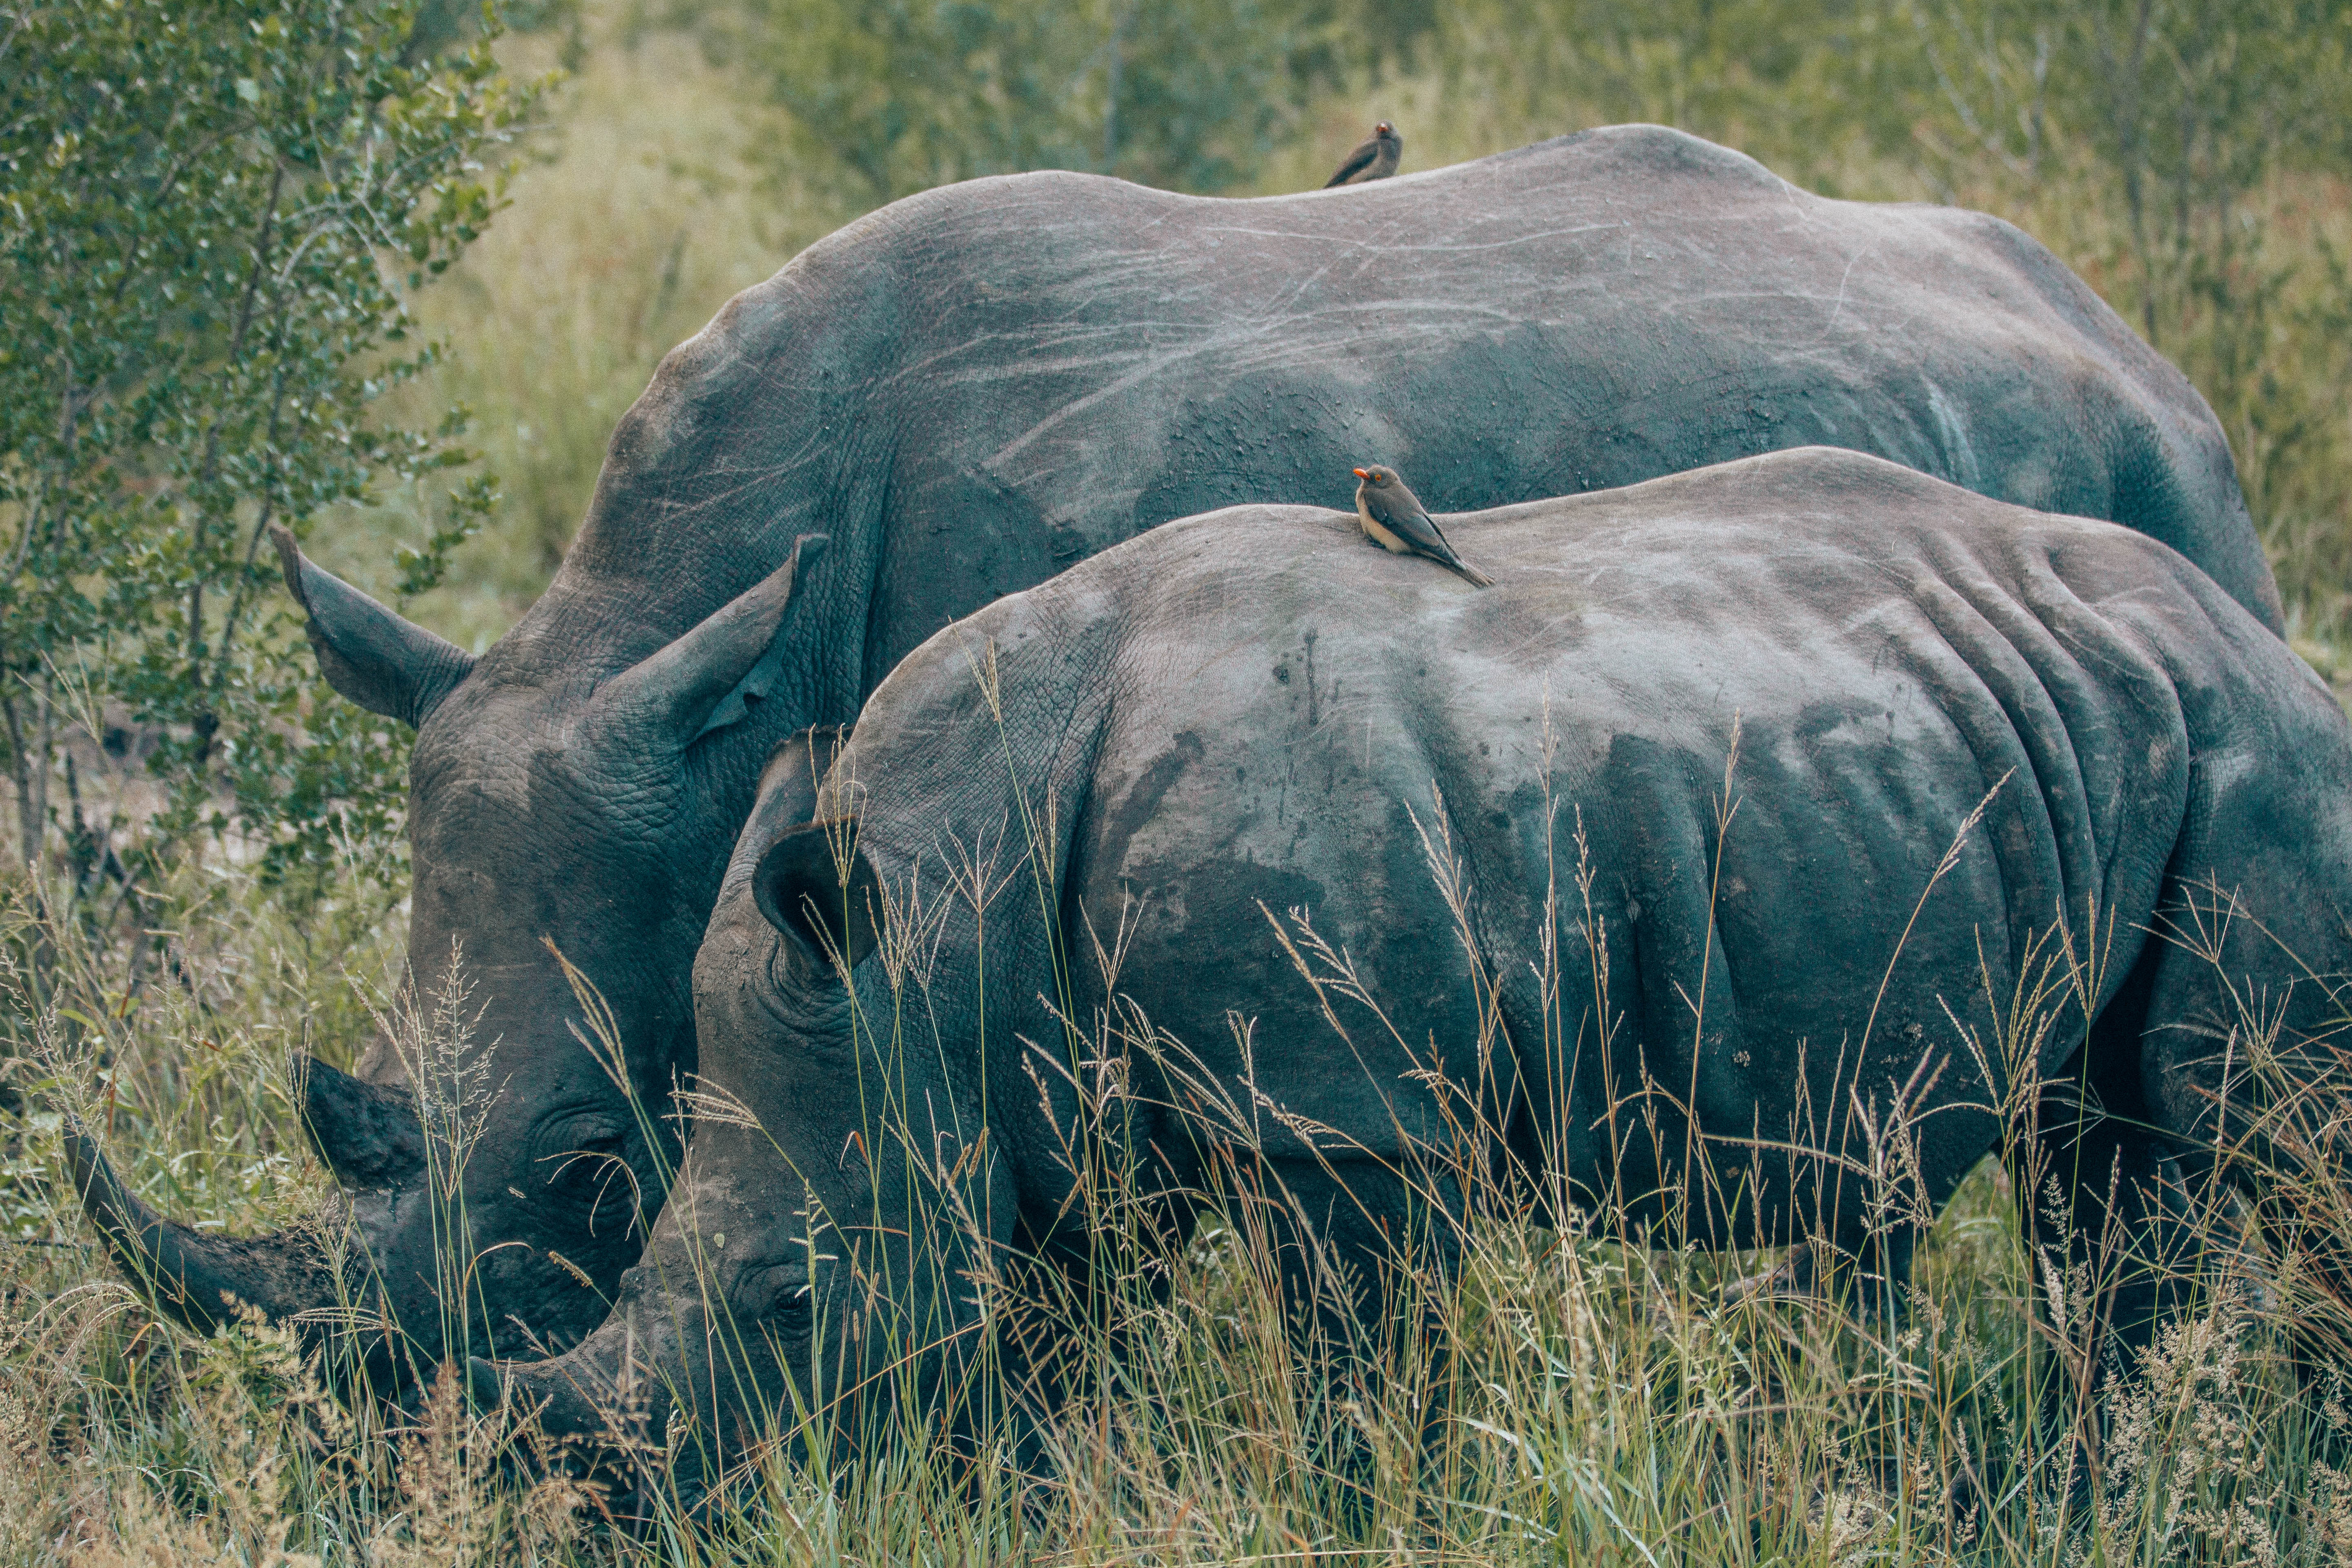 Rhino mama with baby rhino.